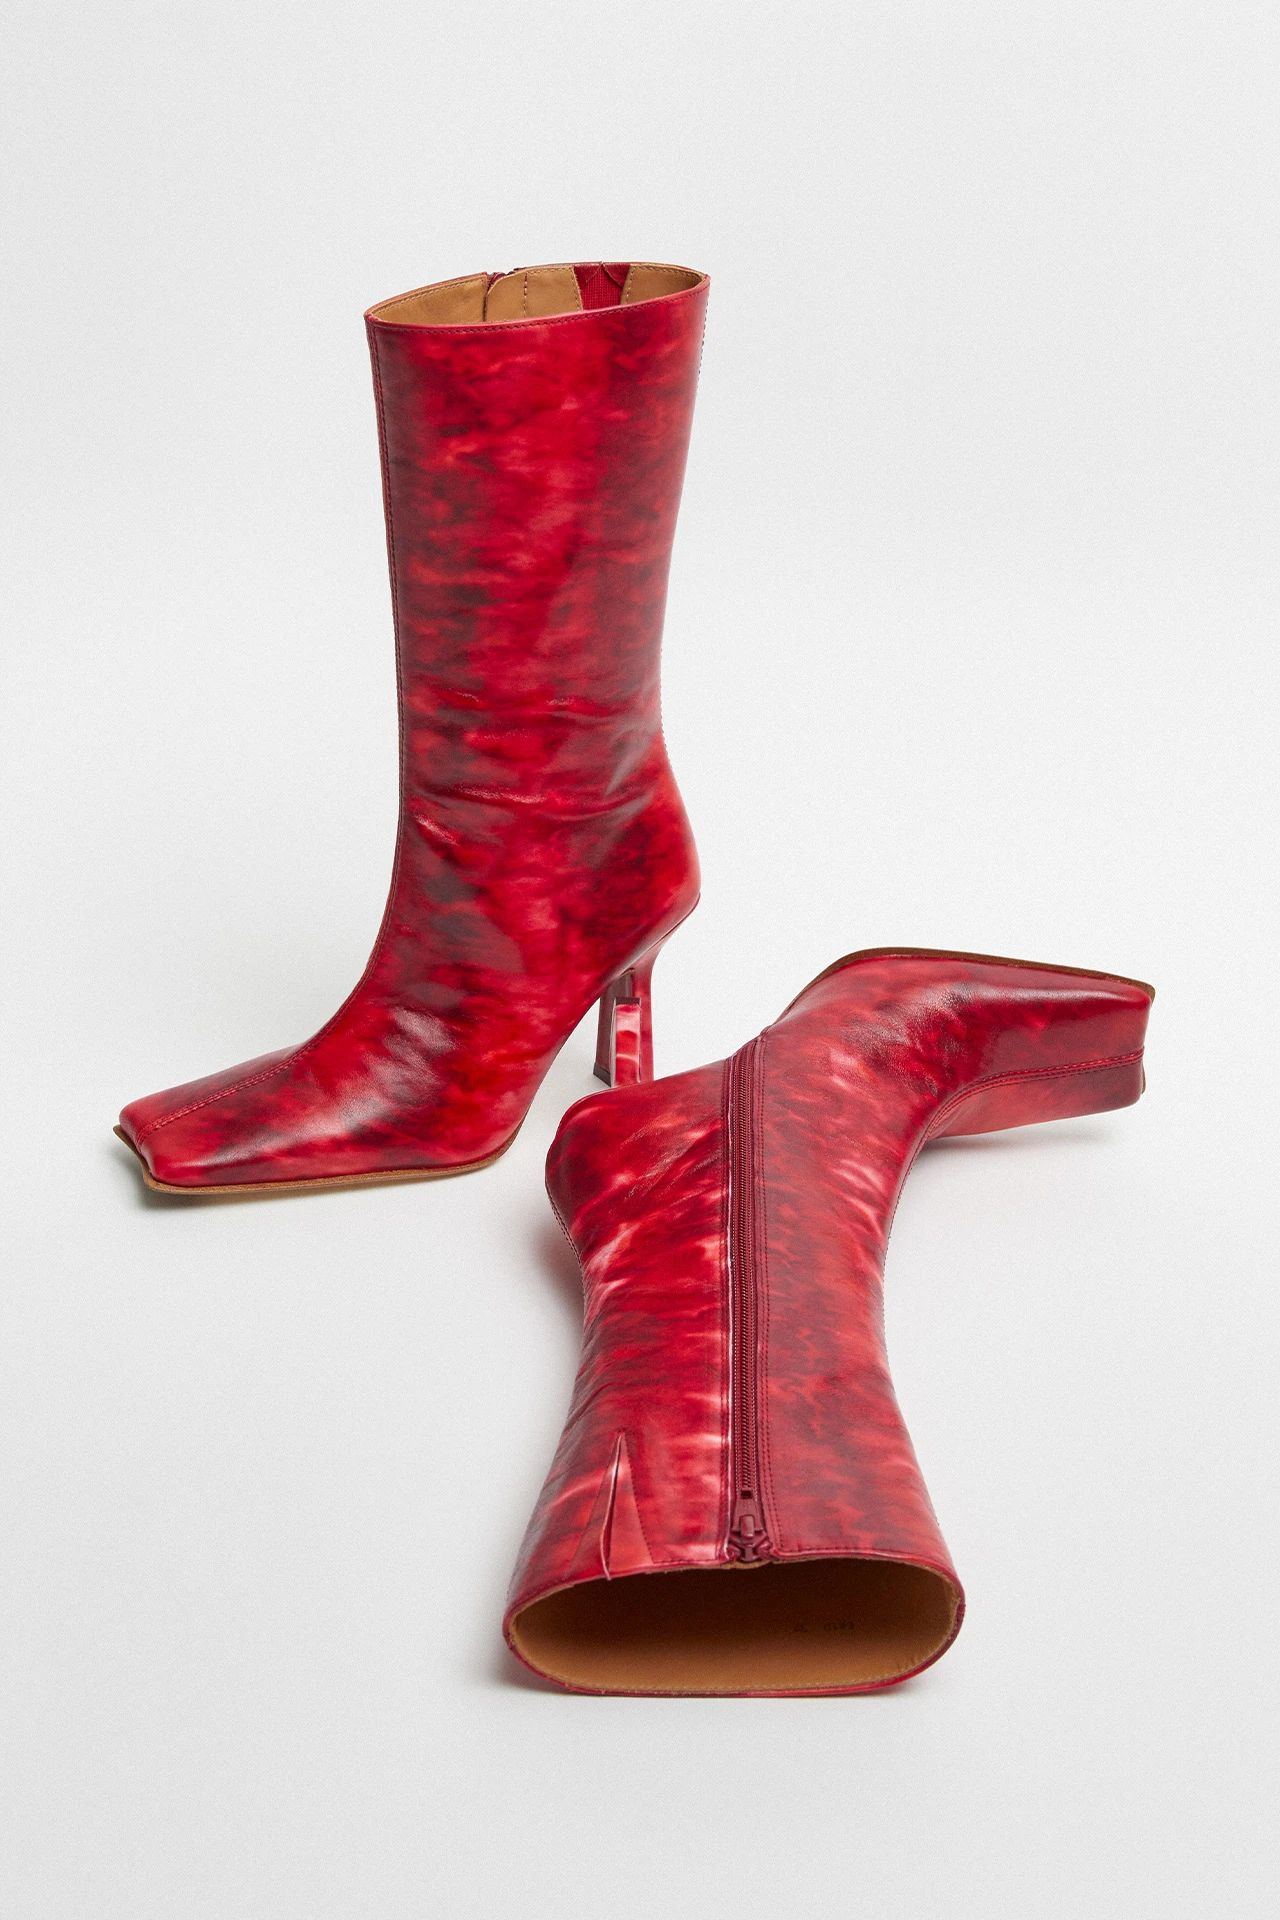 Miista-noor-red-boots-02